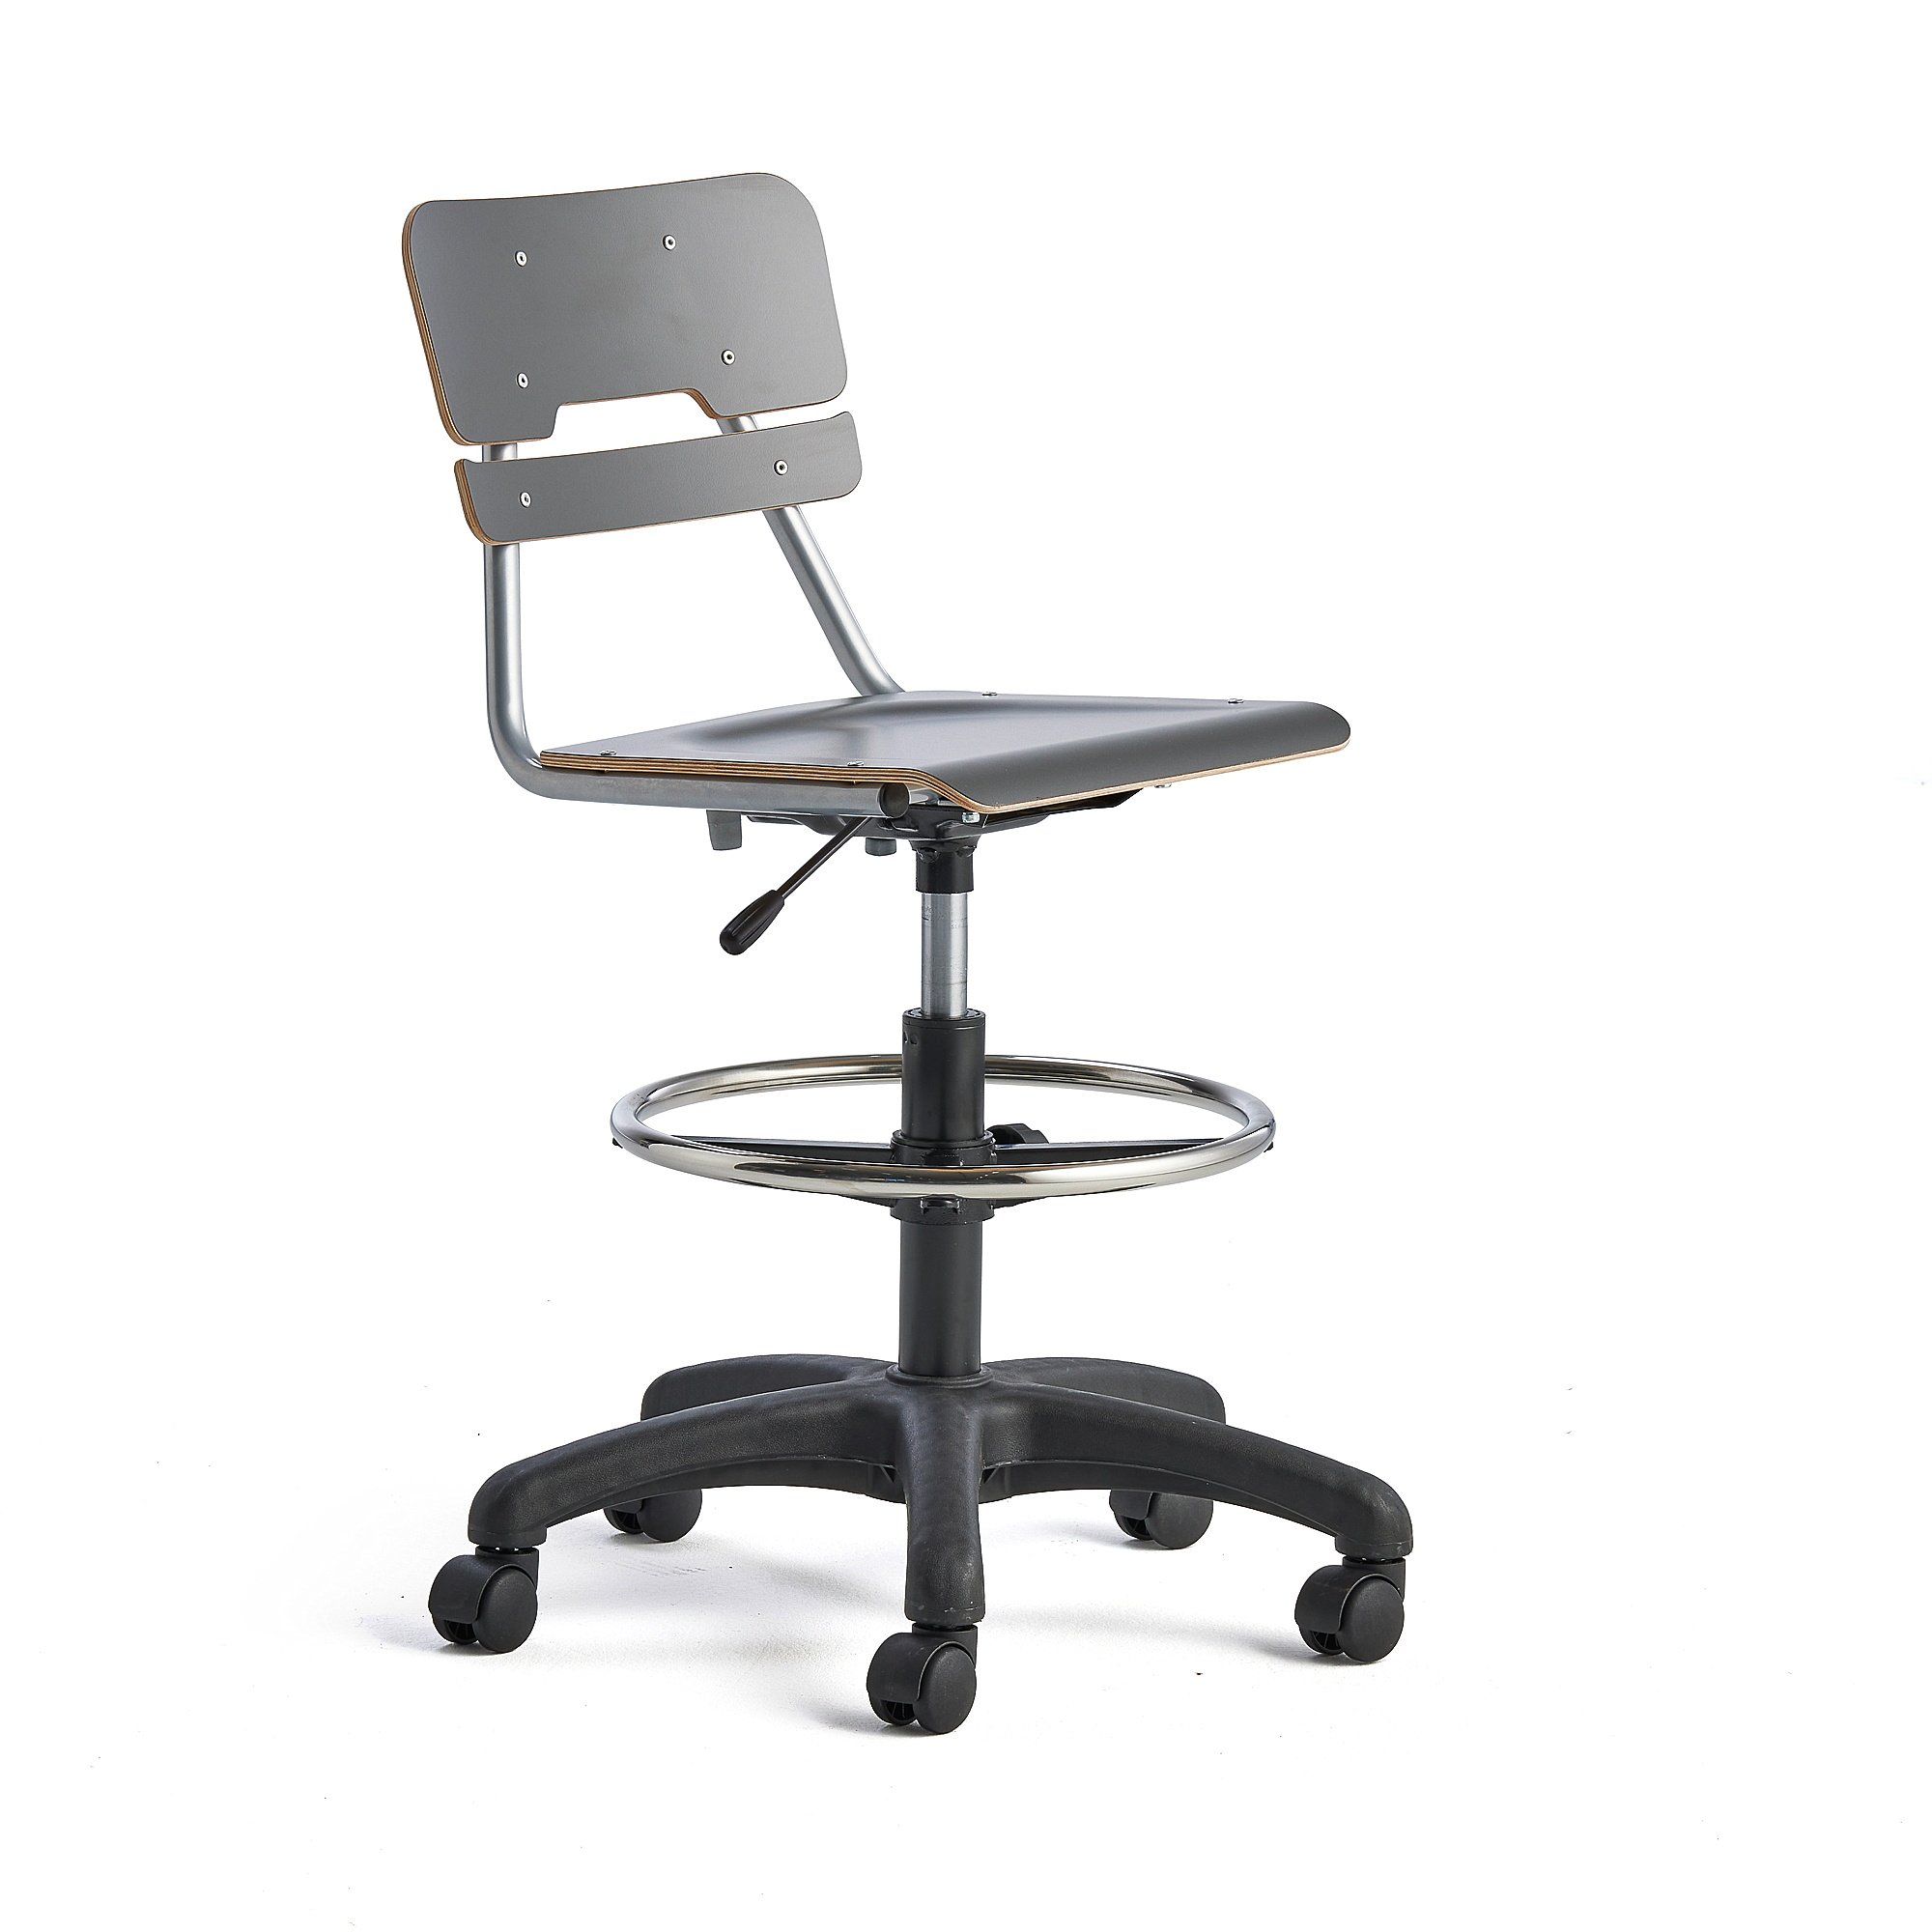 Otočná židle LEGERE, malý sedák, s kolečky, nastavitelná výška 530-720 mm, antracitově šedá